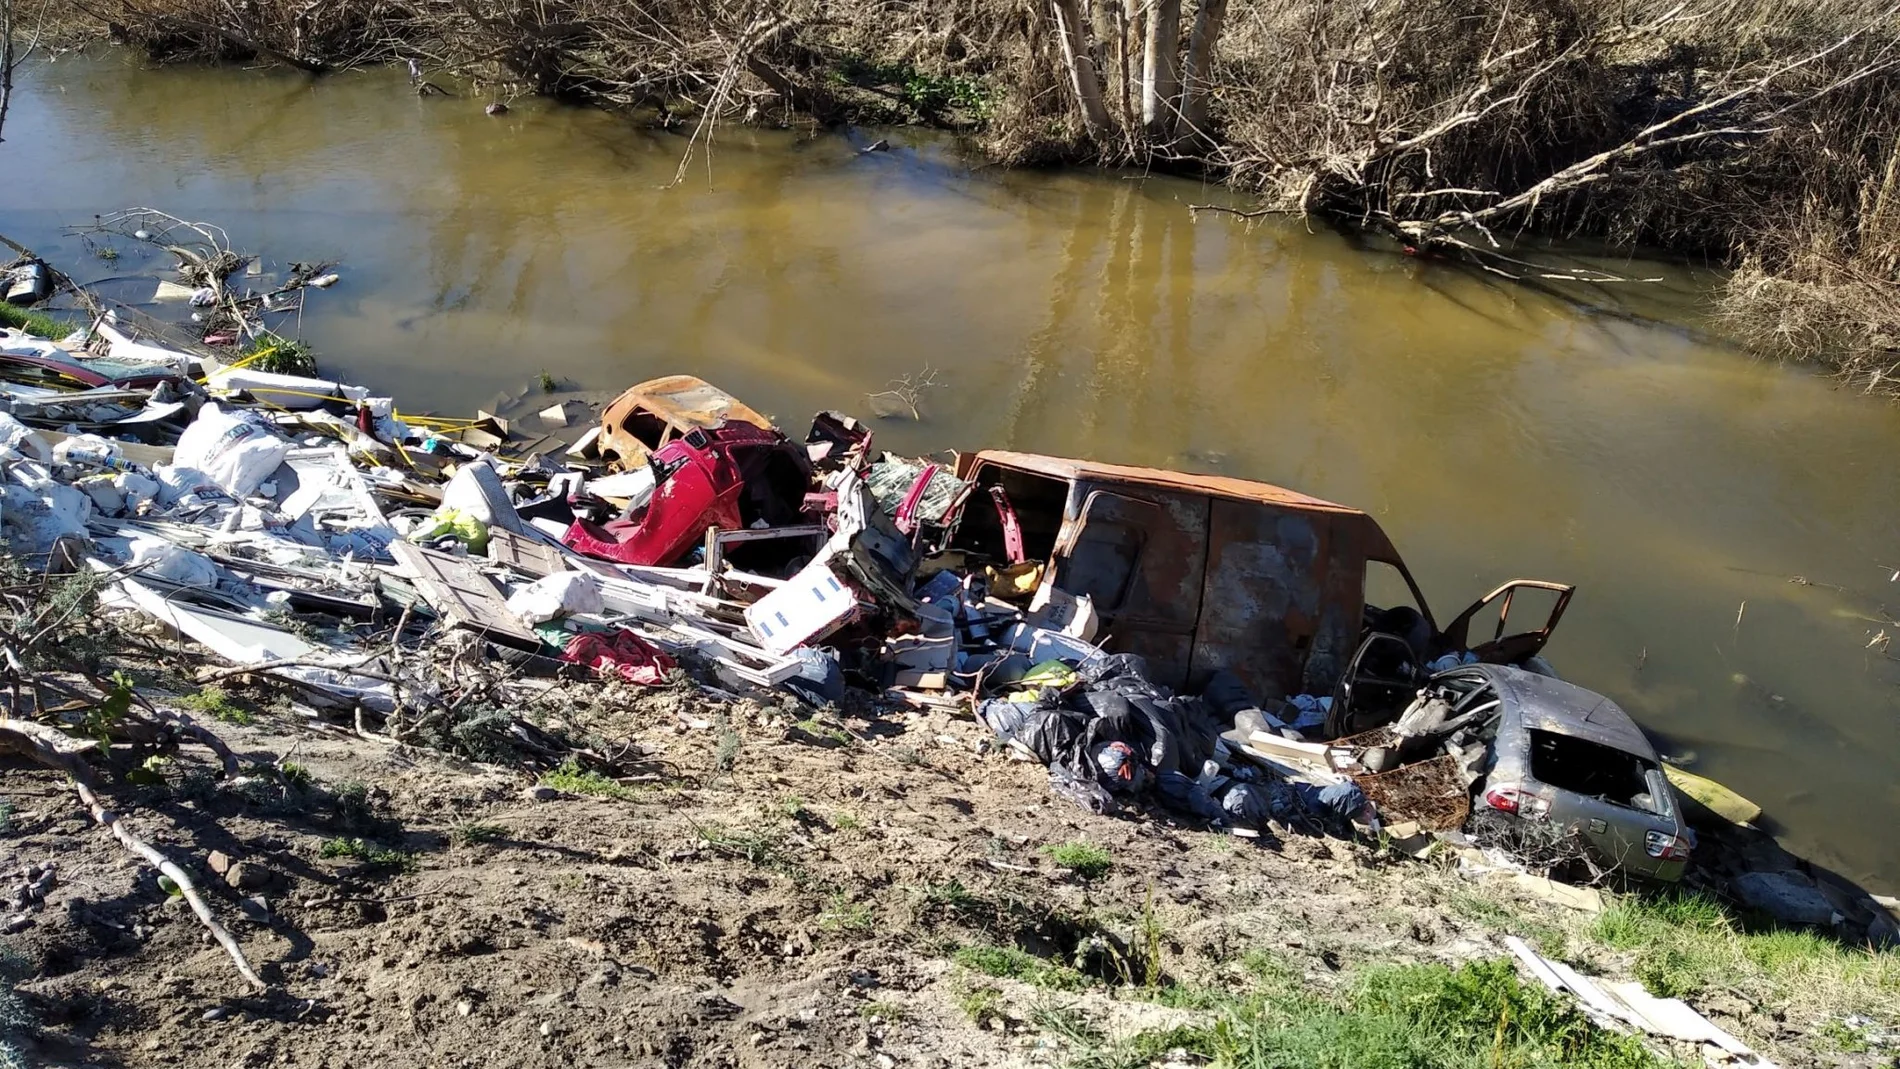 Escombros , basuras, electrodomésticos y hasta coches calcinados forman los vertidos ilegales sobre el río Guadarrama